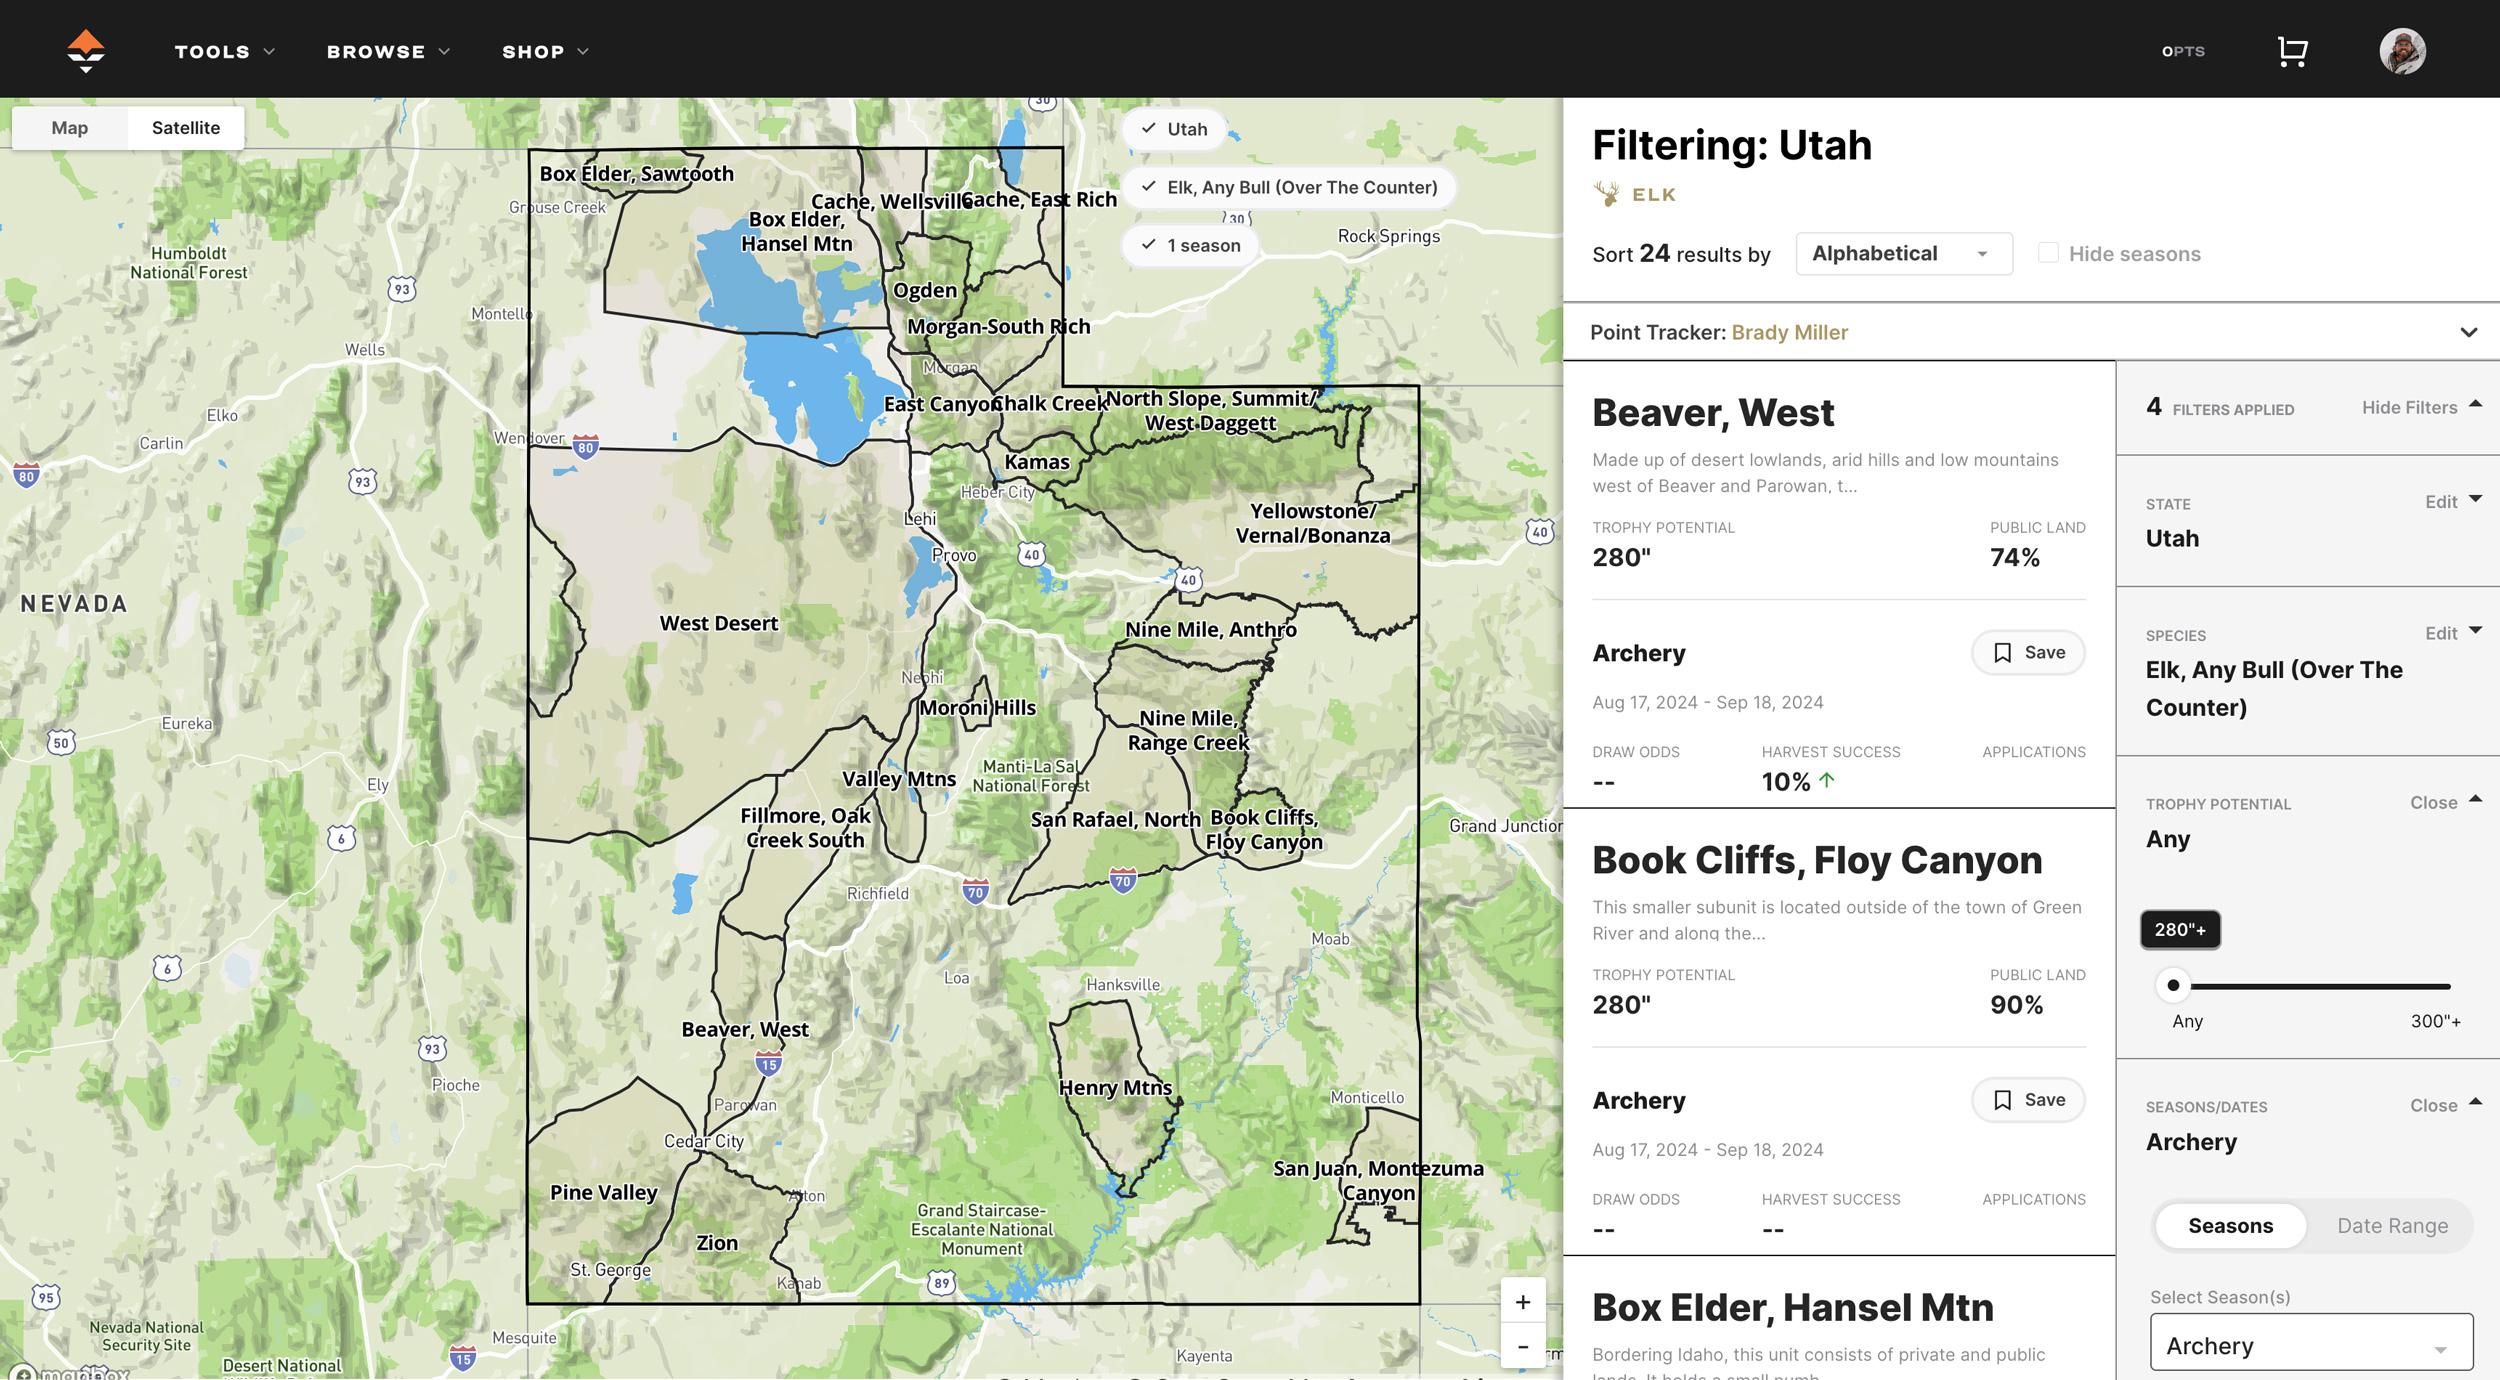 Utah general season archery elk hunting unit research using GOHUNT's Filtering tool